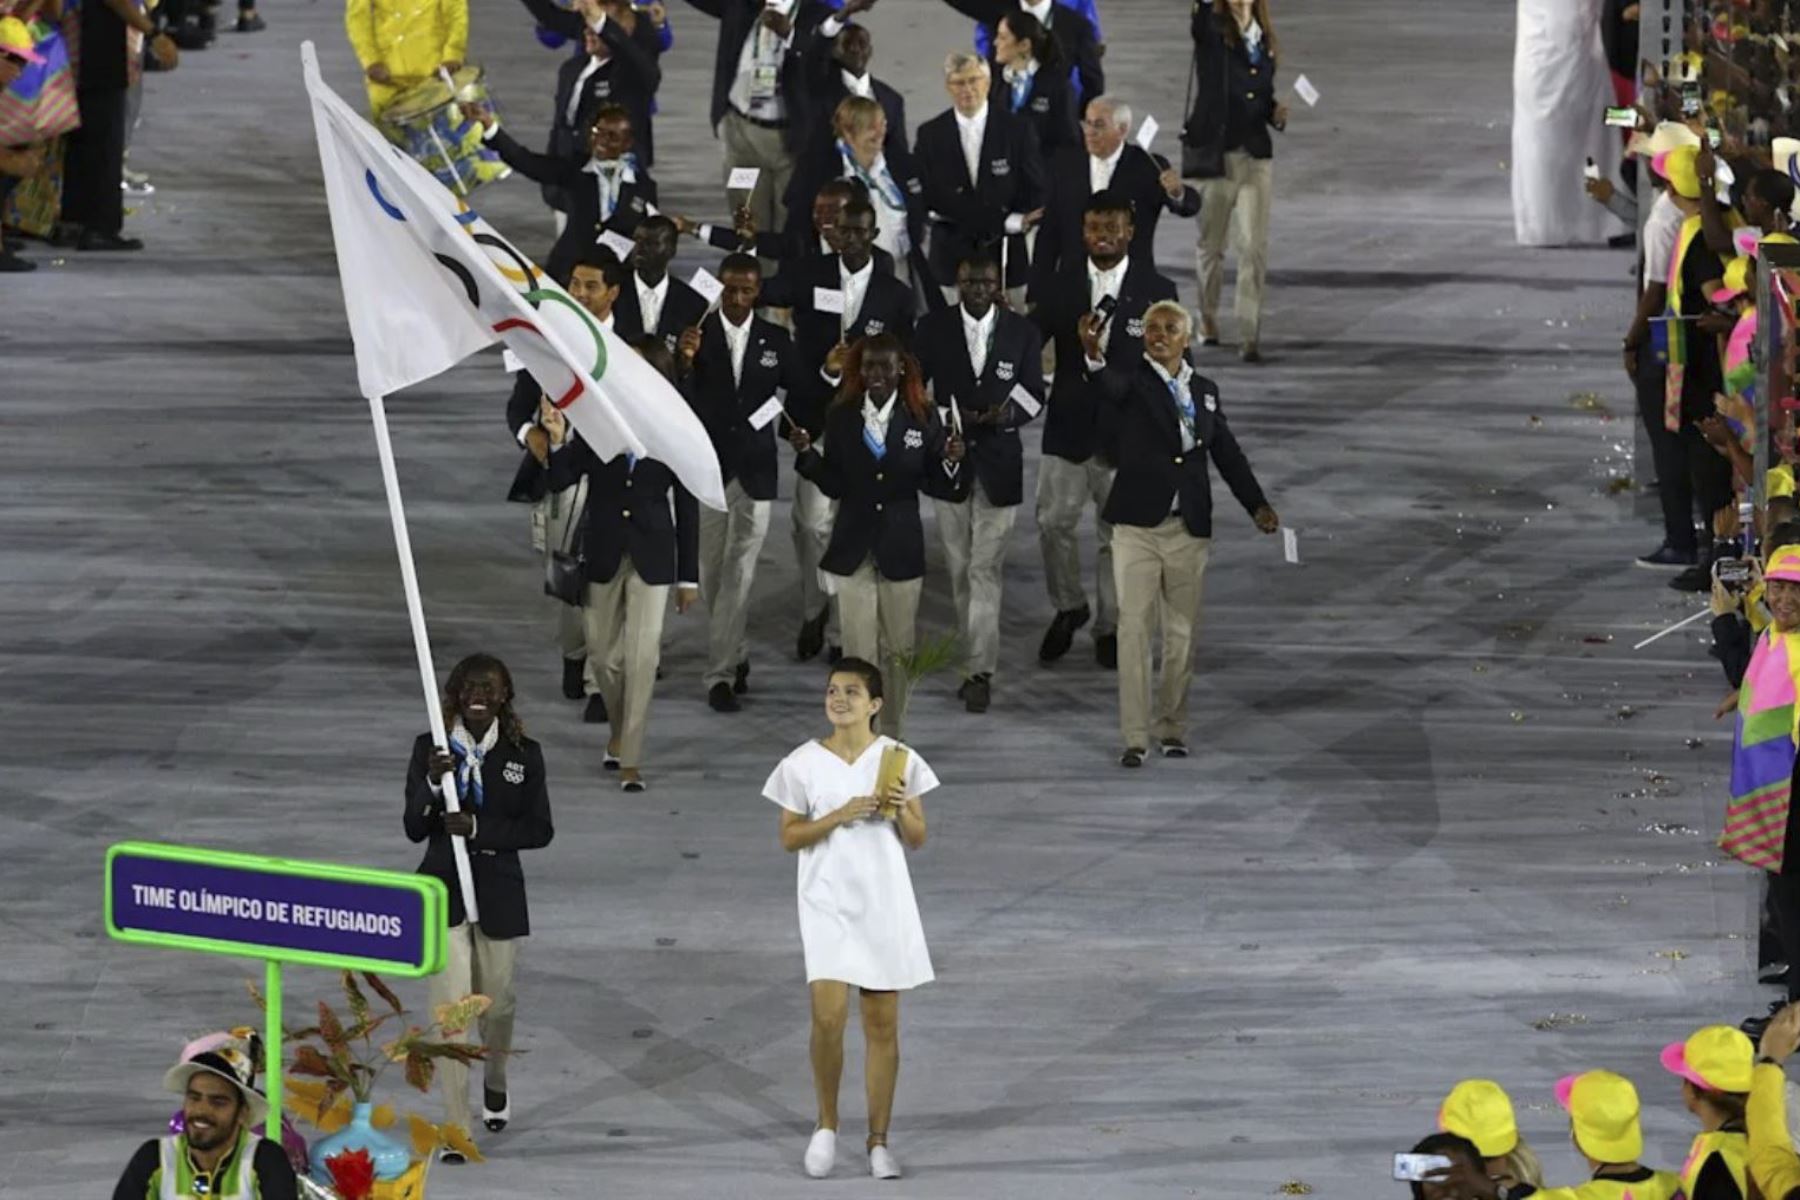 Equipo Olímpico de Refugiados, una "fuente de inspiración" en los juegos de Tokio. Foto: Difusión